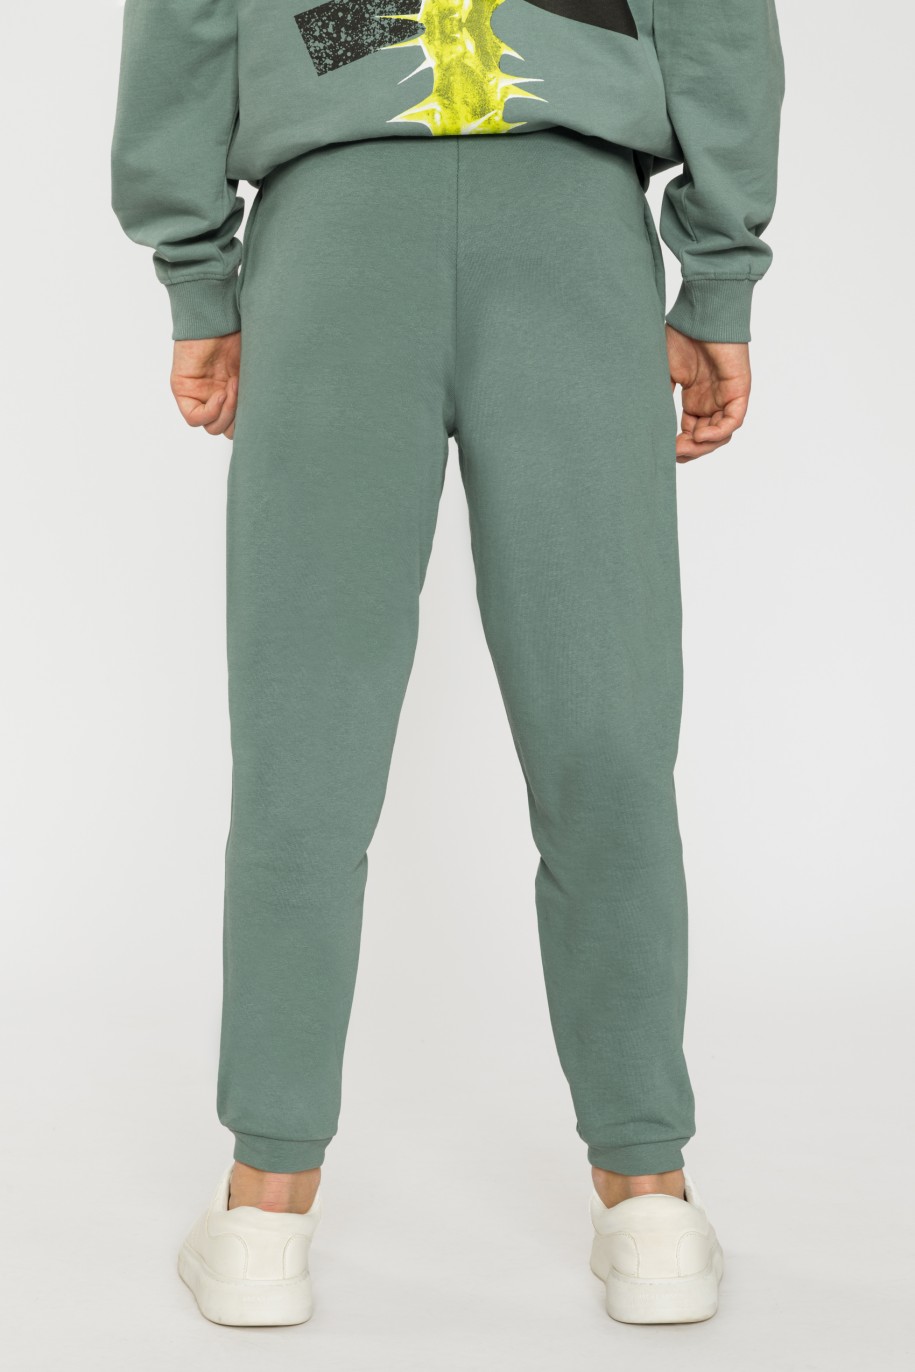 Zielone spodnie dresowe dla chłopaka SKATE OF MIND - 33141